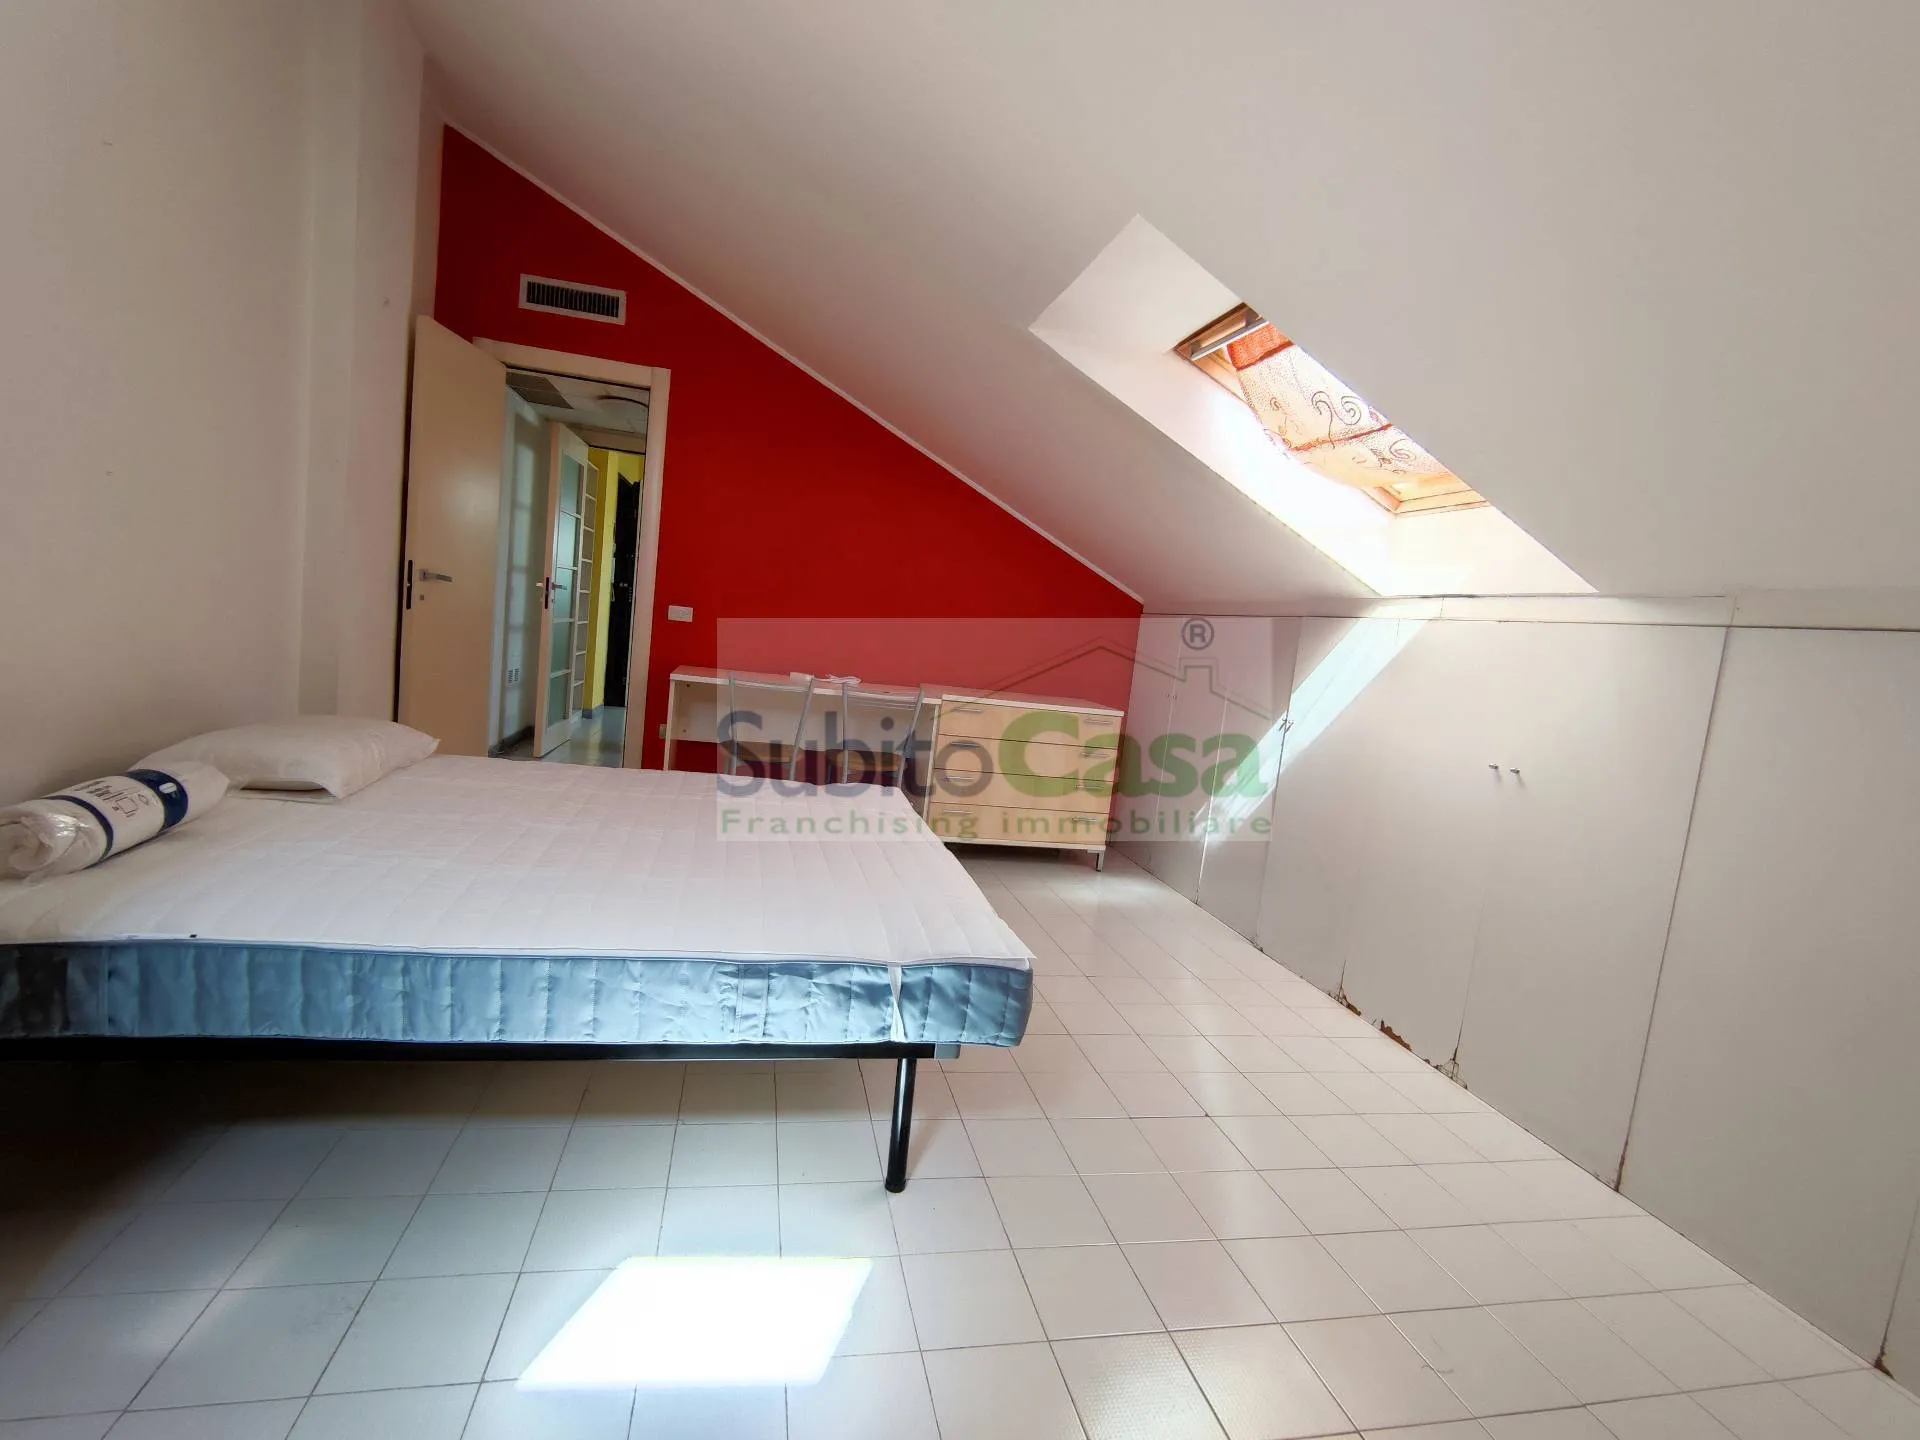 Immagine per Appartamento in affitto a Chieti Viale Benedetto Croce